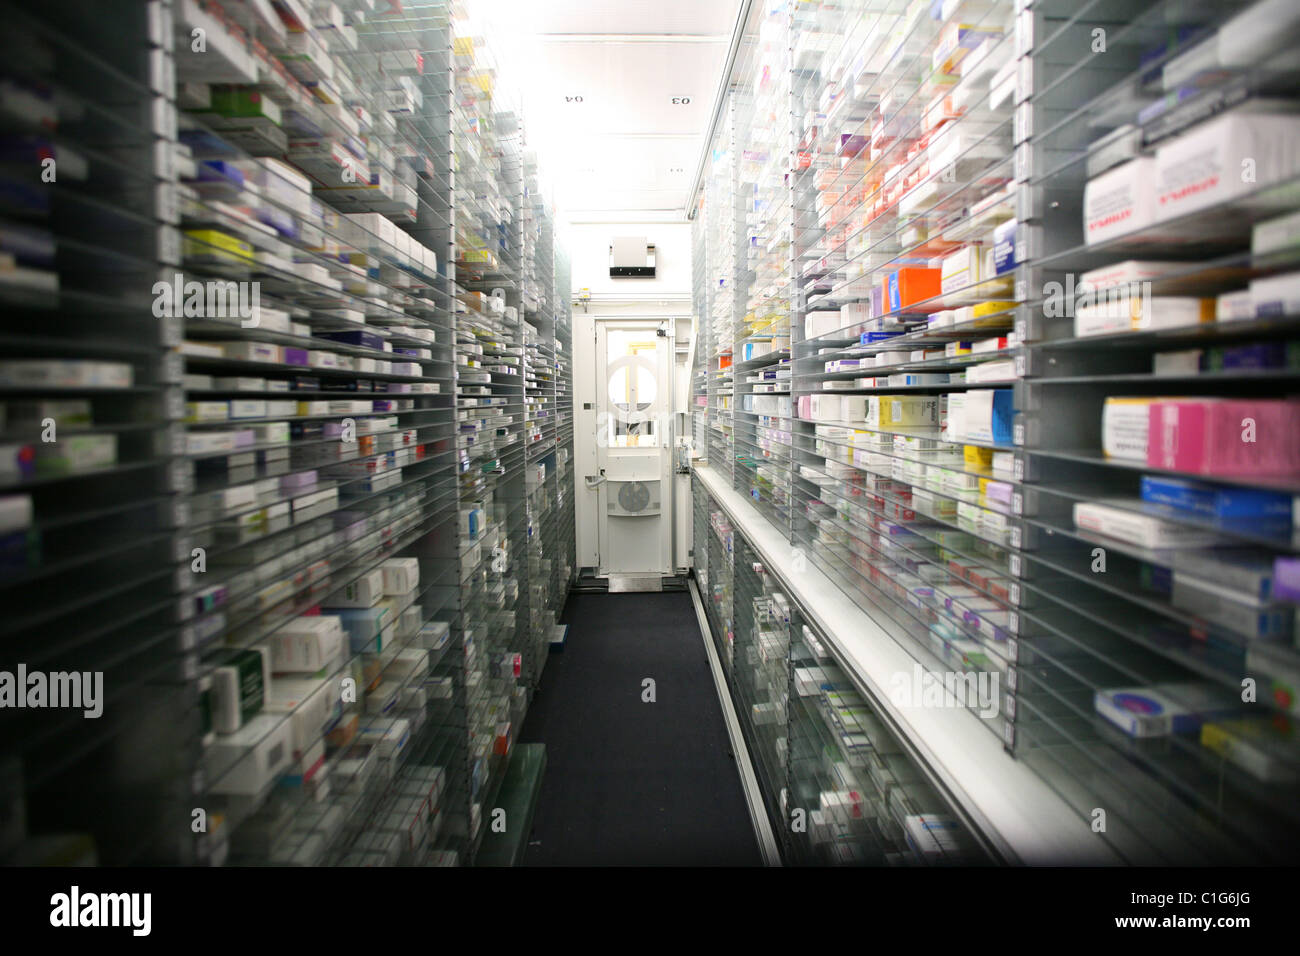 Hospital pharmacy storage unit Stock Photo